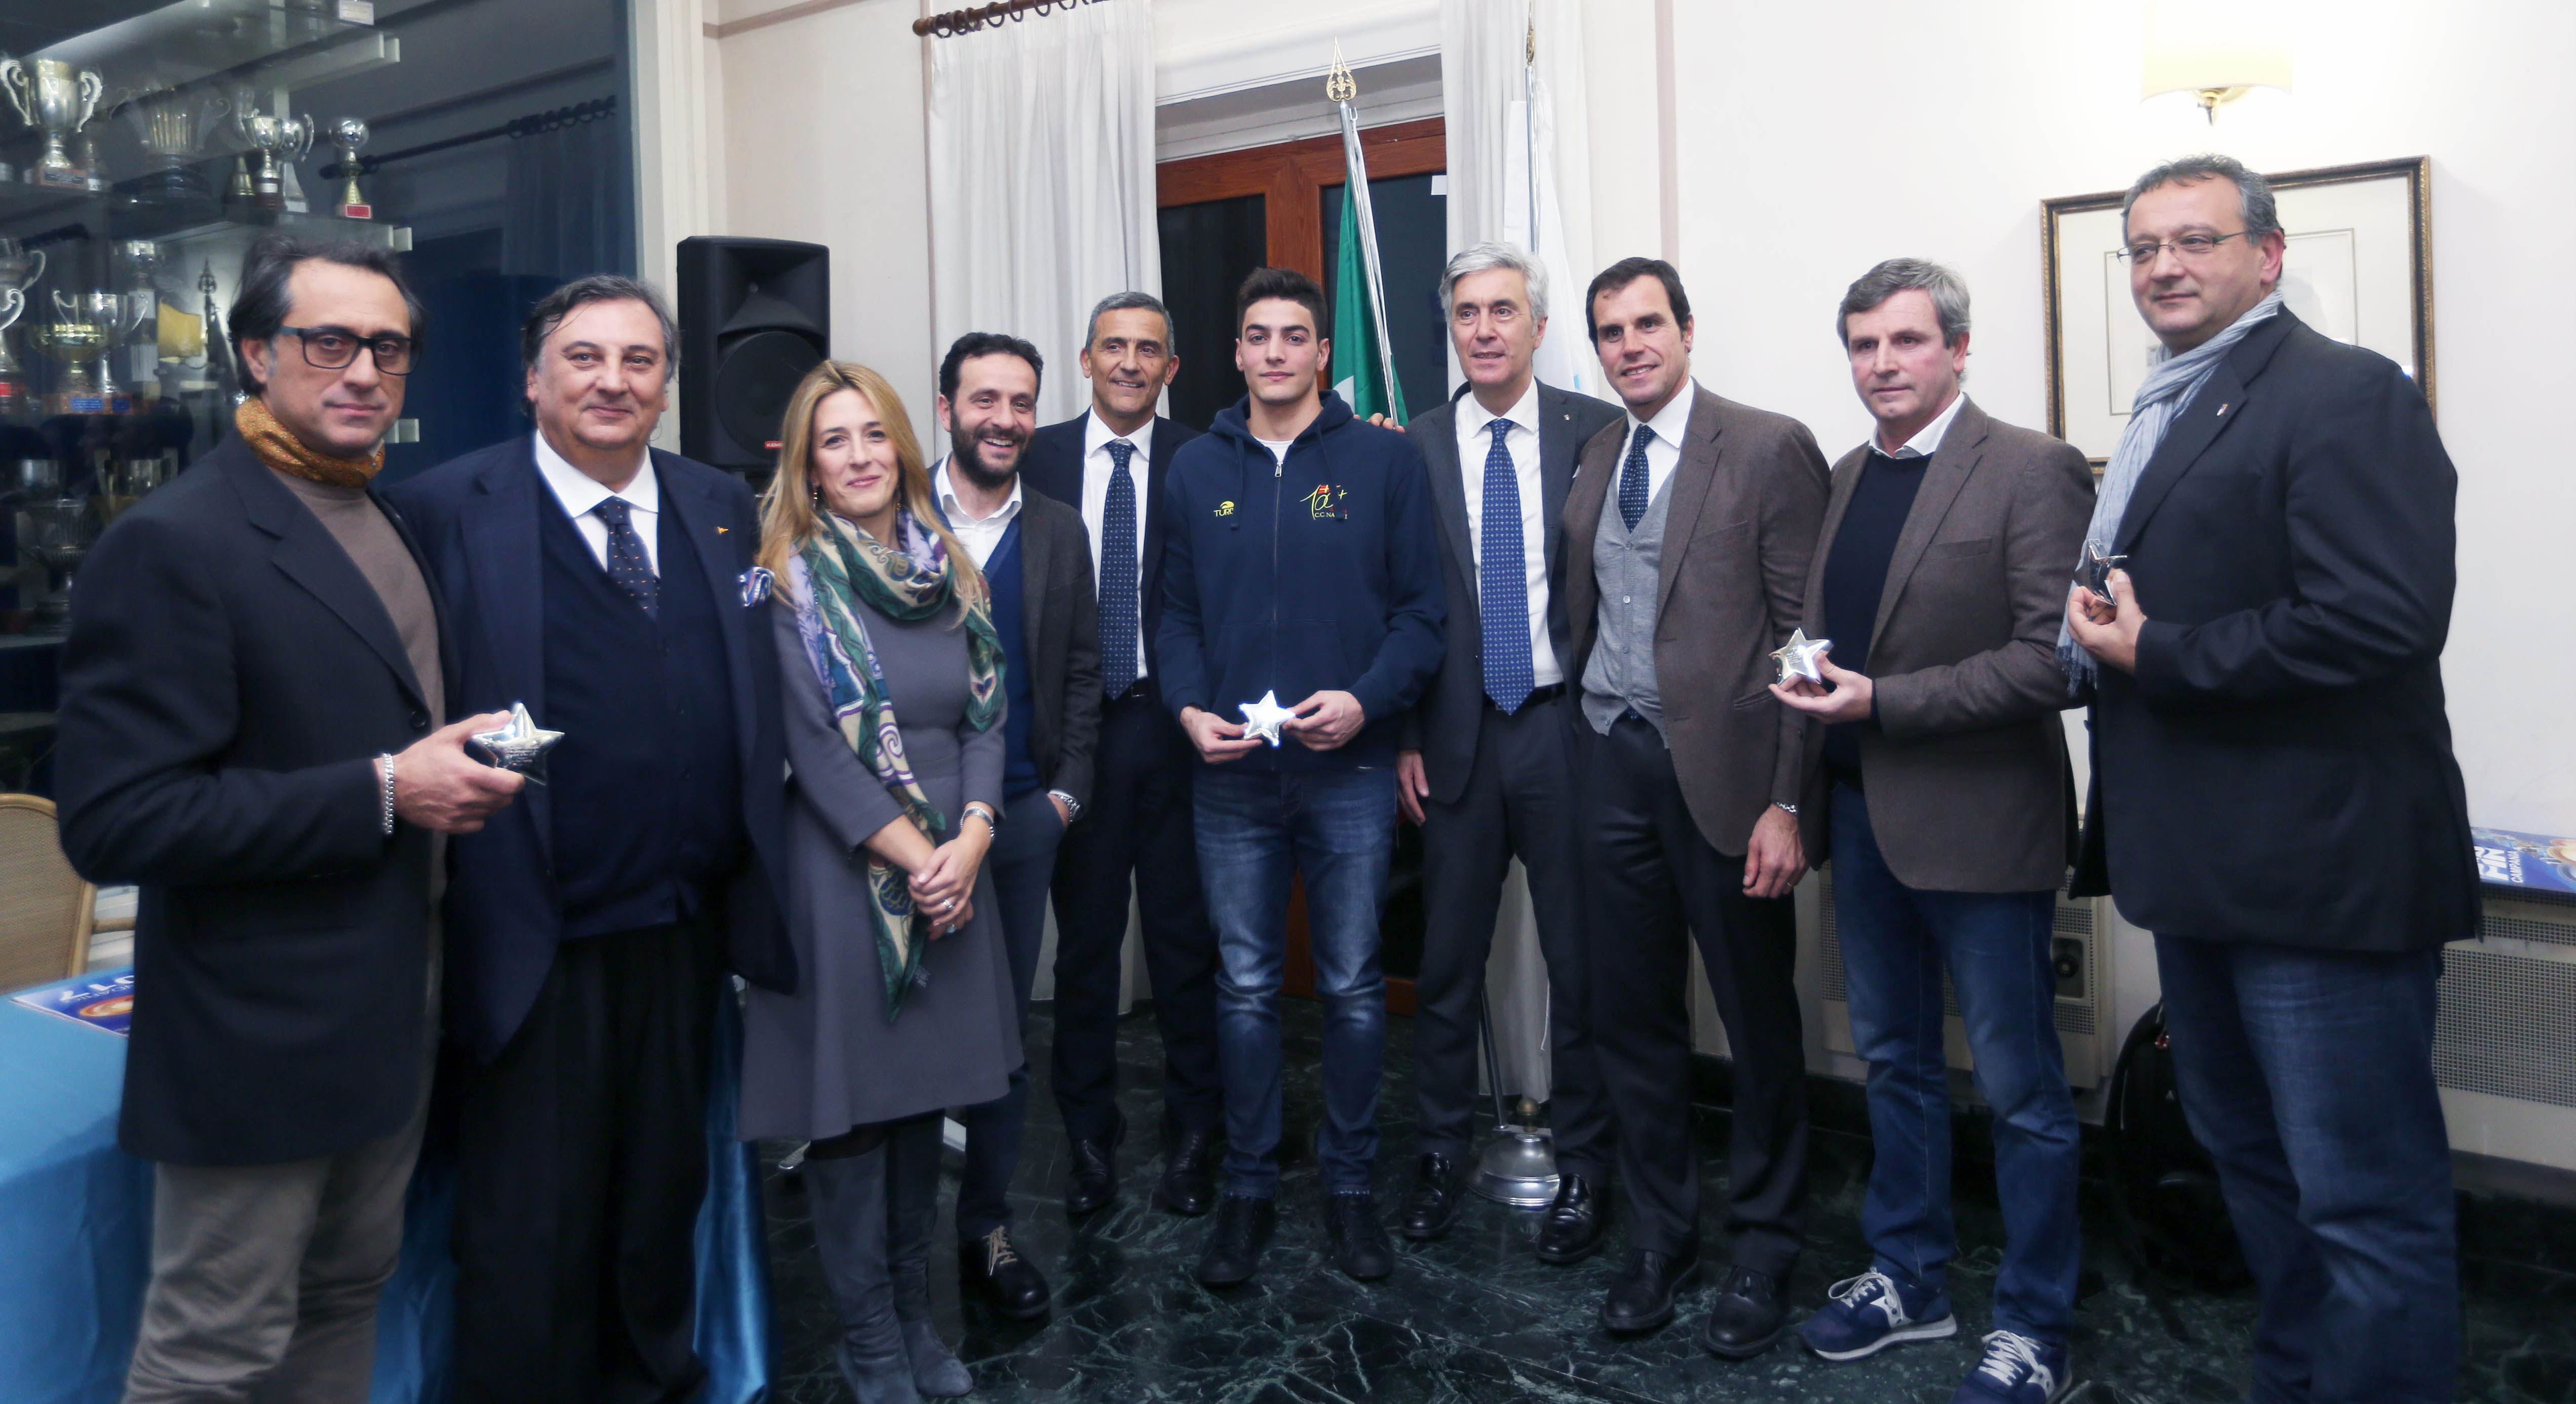 FIN Campania, i campioni del 2016 premiati al Molosiglio - 1 - GUARDA ORA